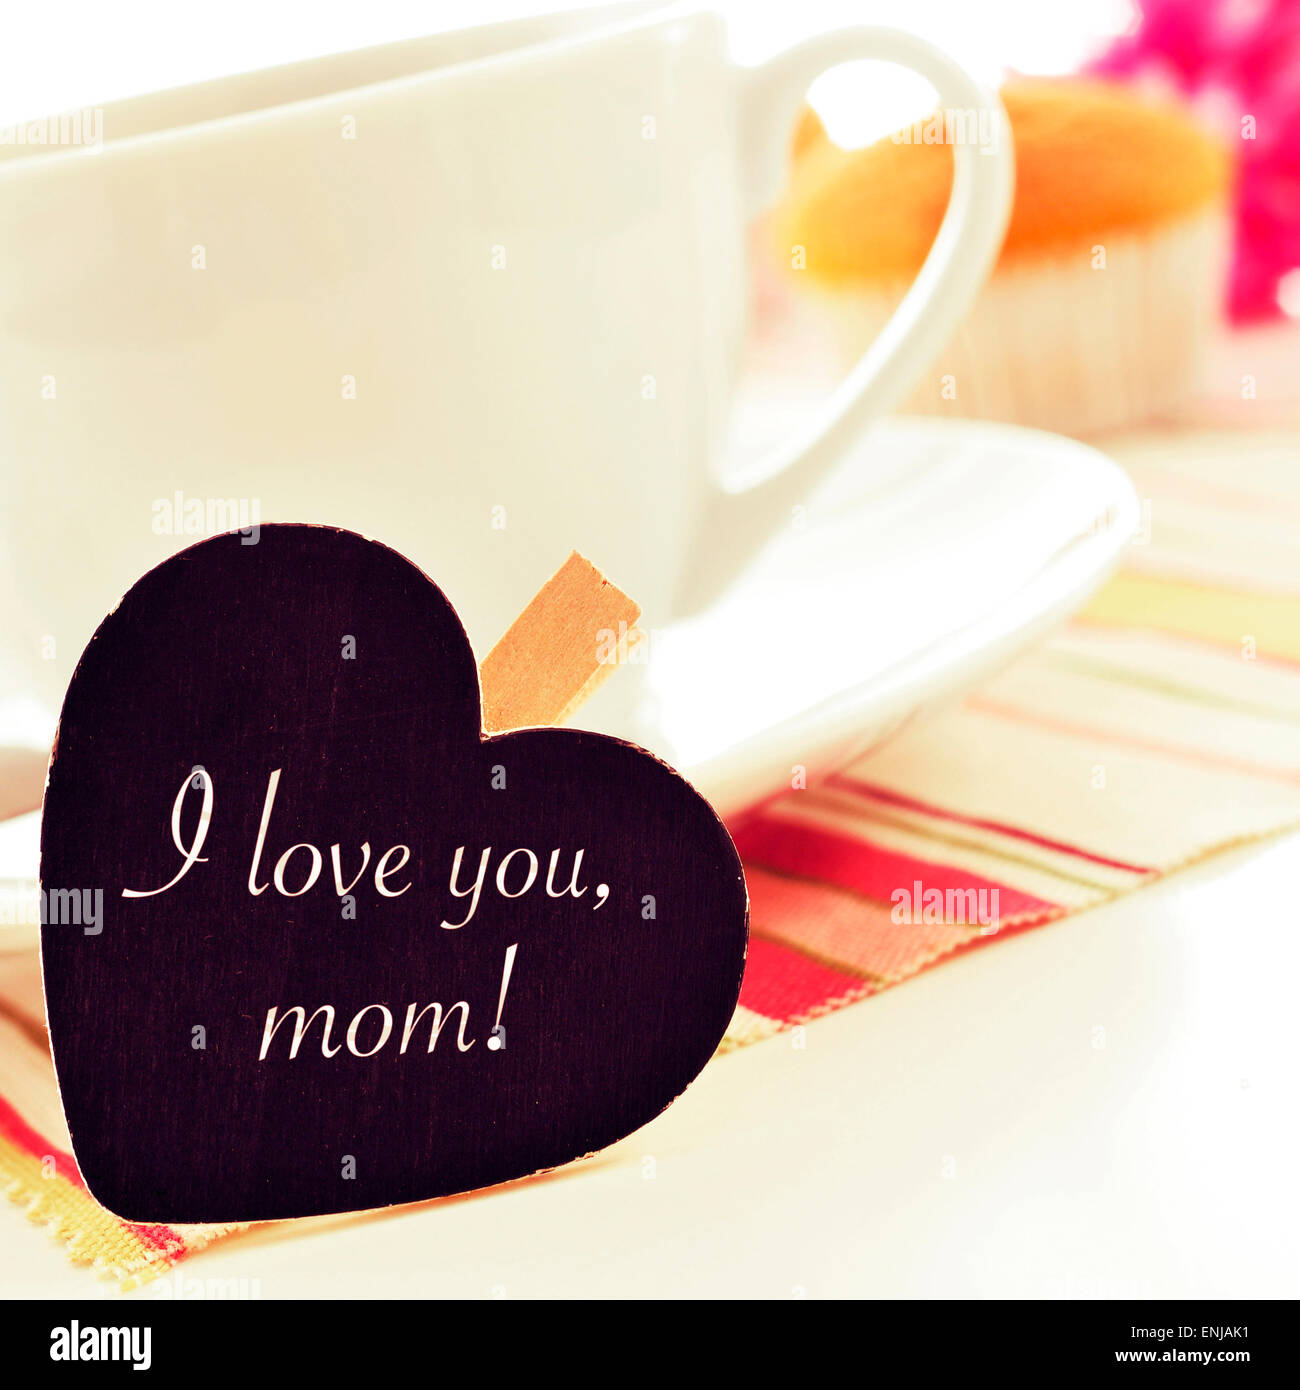 der Satz ich liebe Sie Mama geschrieben in einer Herzform Tafel platziert in einer Tasse Kaffee, mit einigen Muffins im Hintergrund Stockfoto